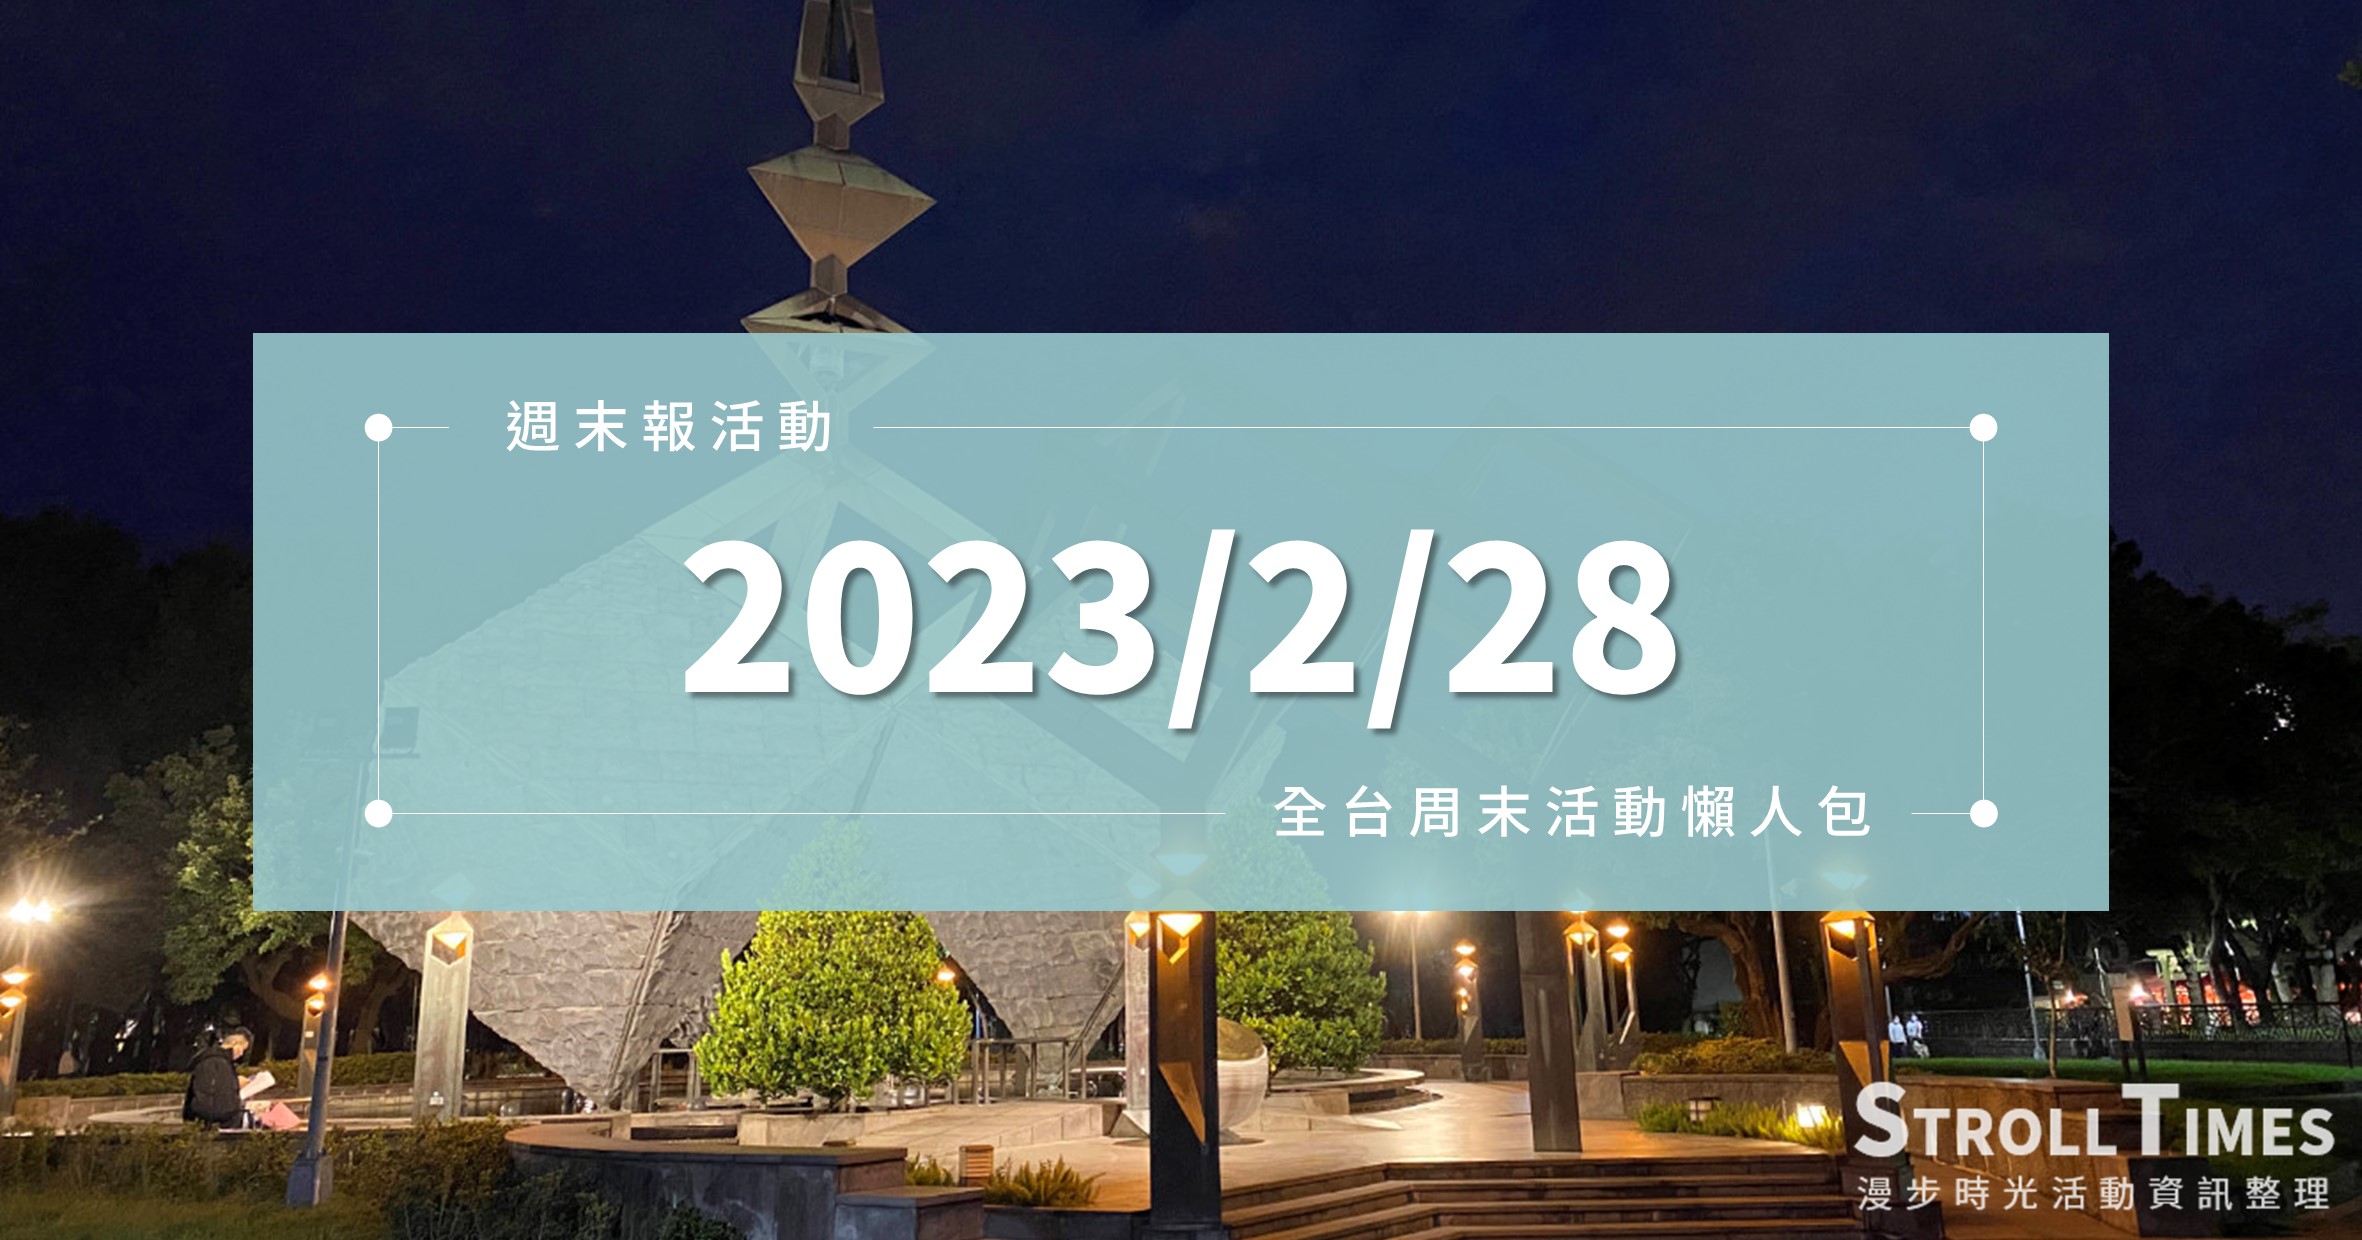 週末活動》全台「2023/2/28」二二八連假活動整理 @漫步時光